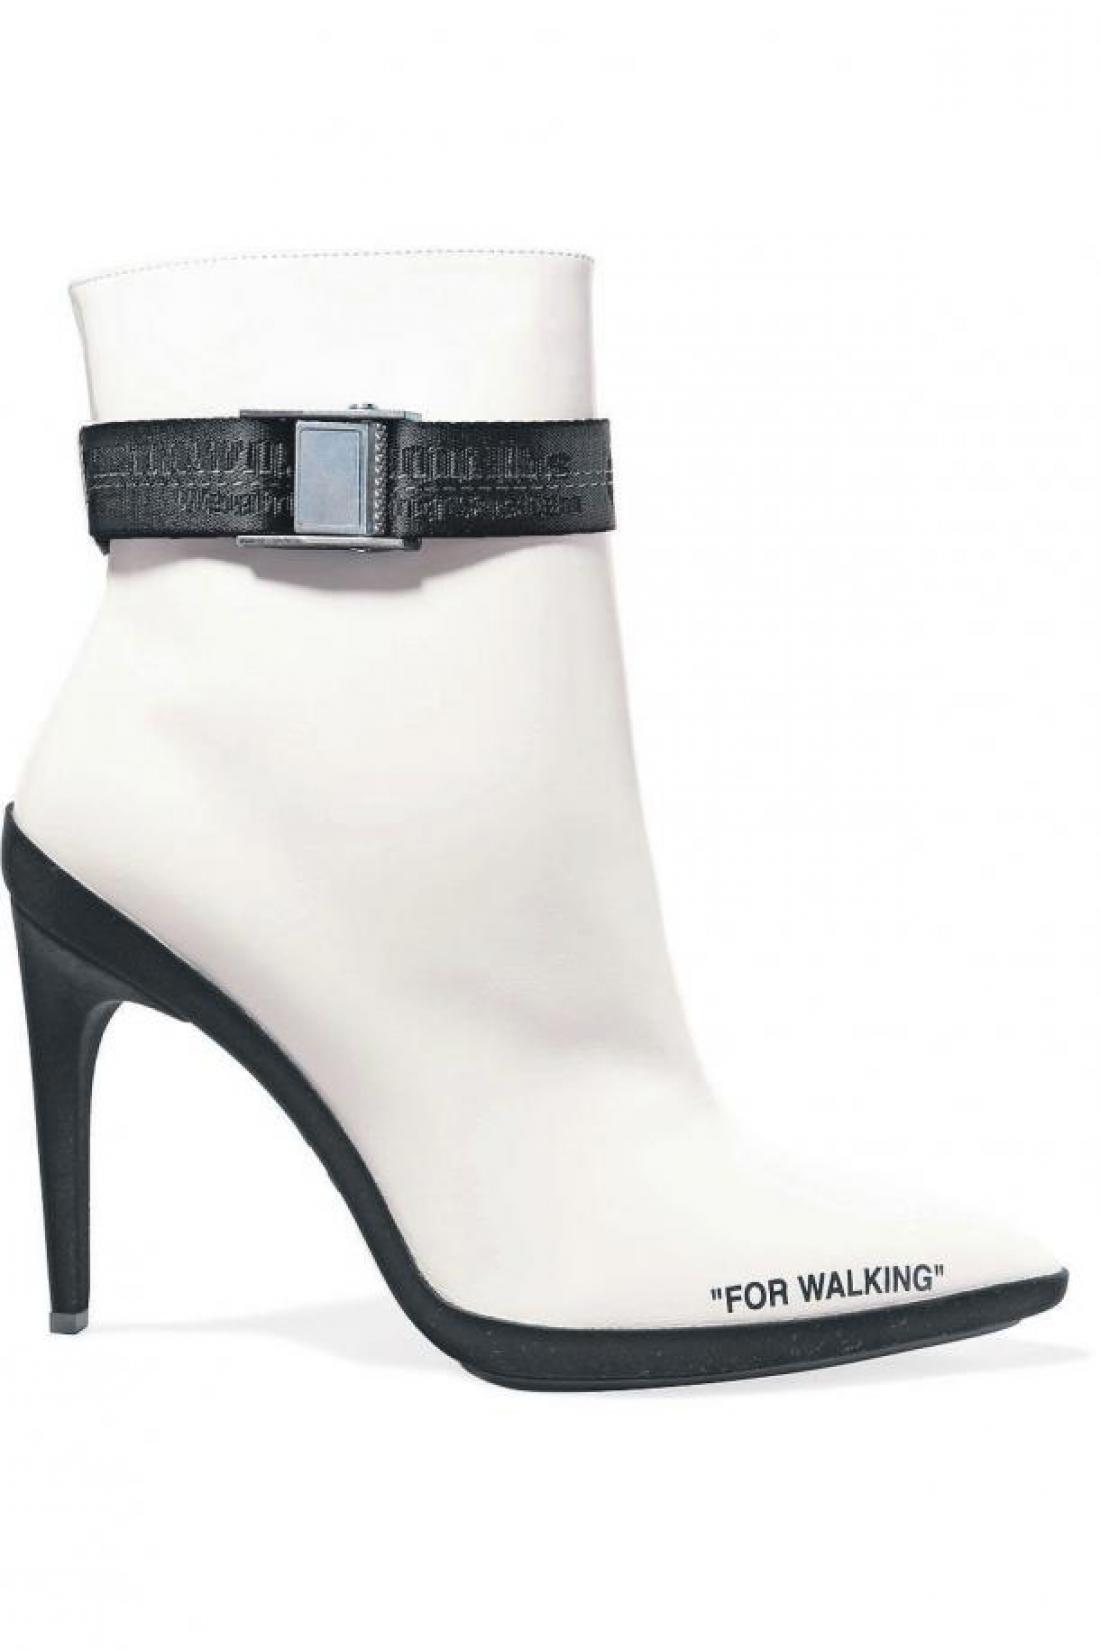 Najbolj vroča modna znamka čevljev ta hip Off-White navdušuje s kolekcijo For Walking.